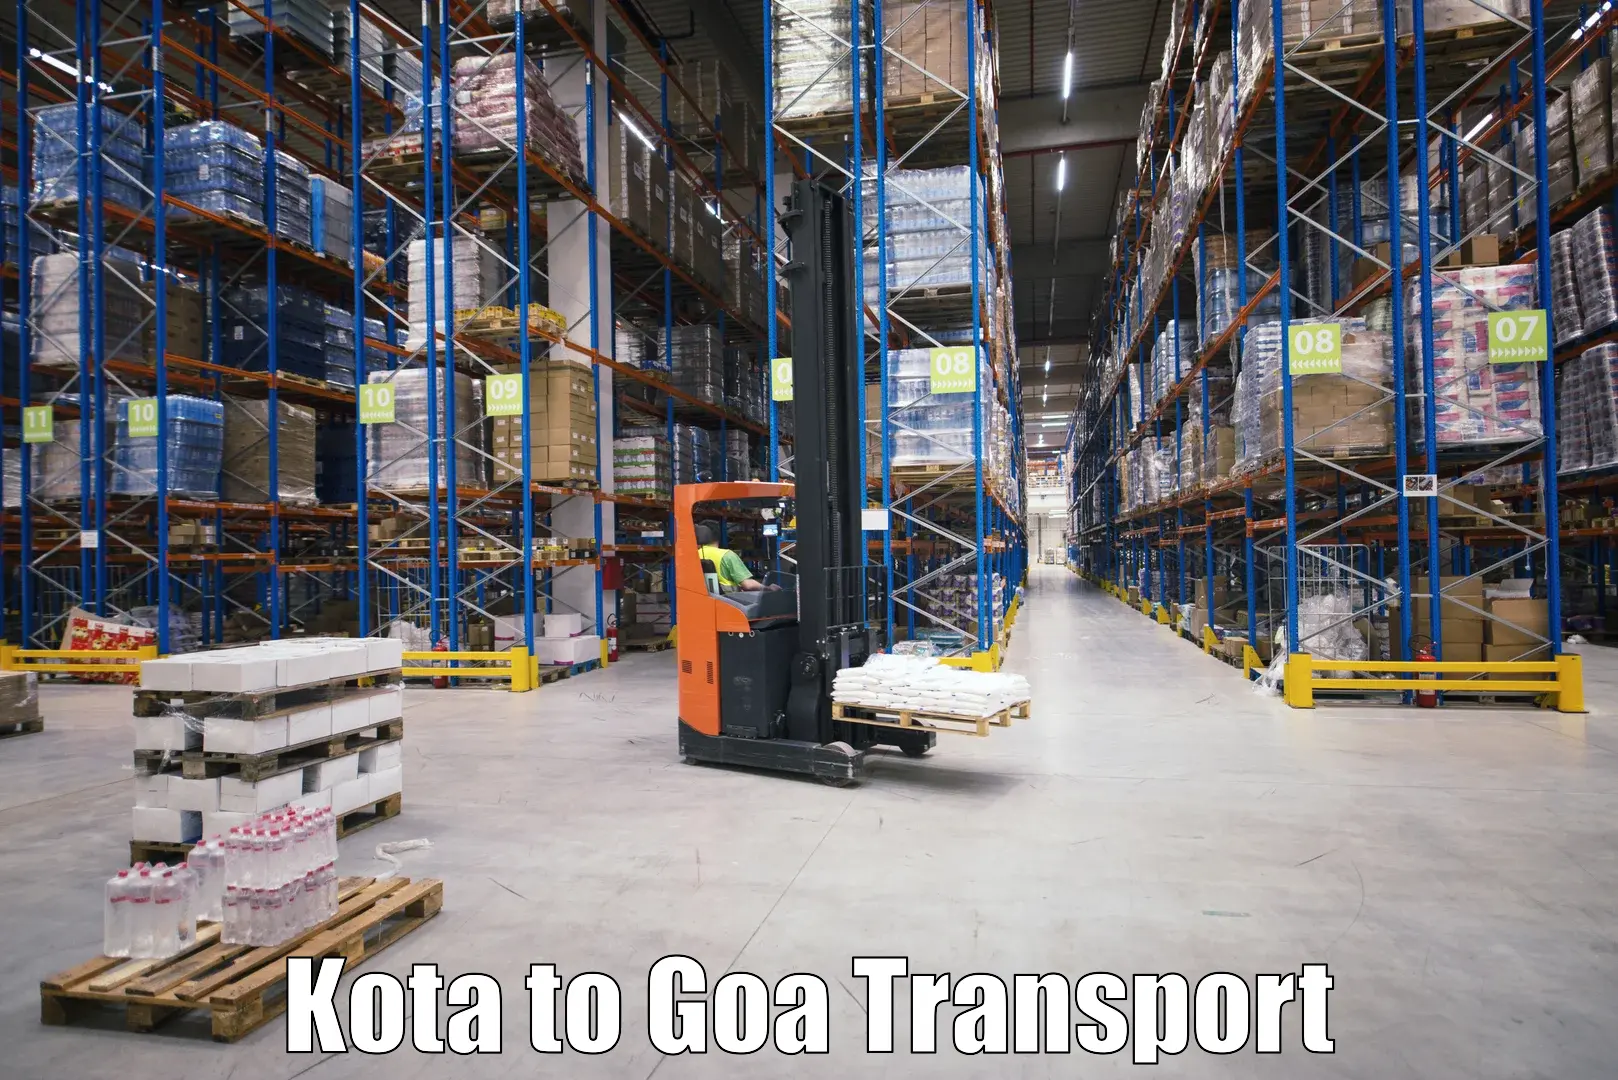 Transportation services Kota to Goa